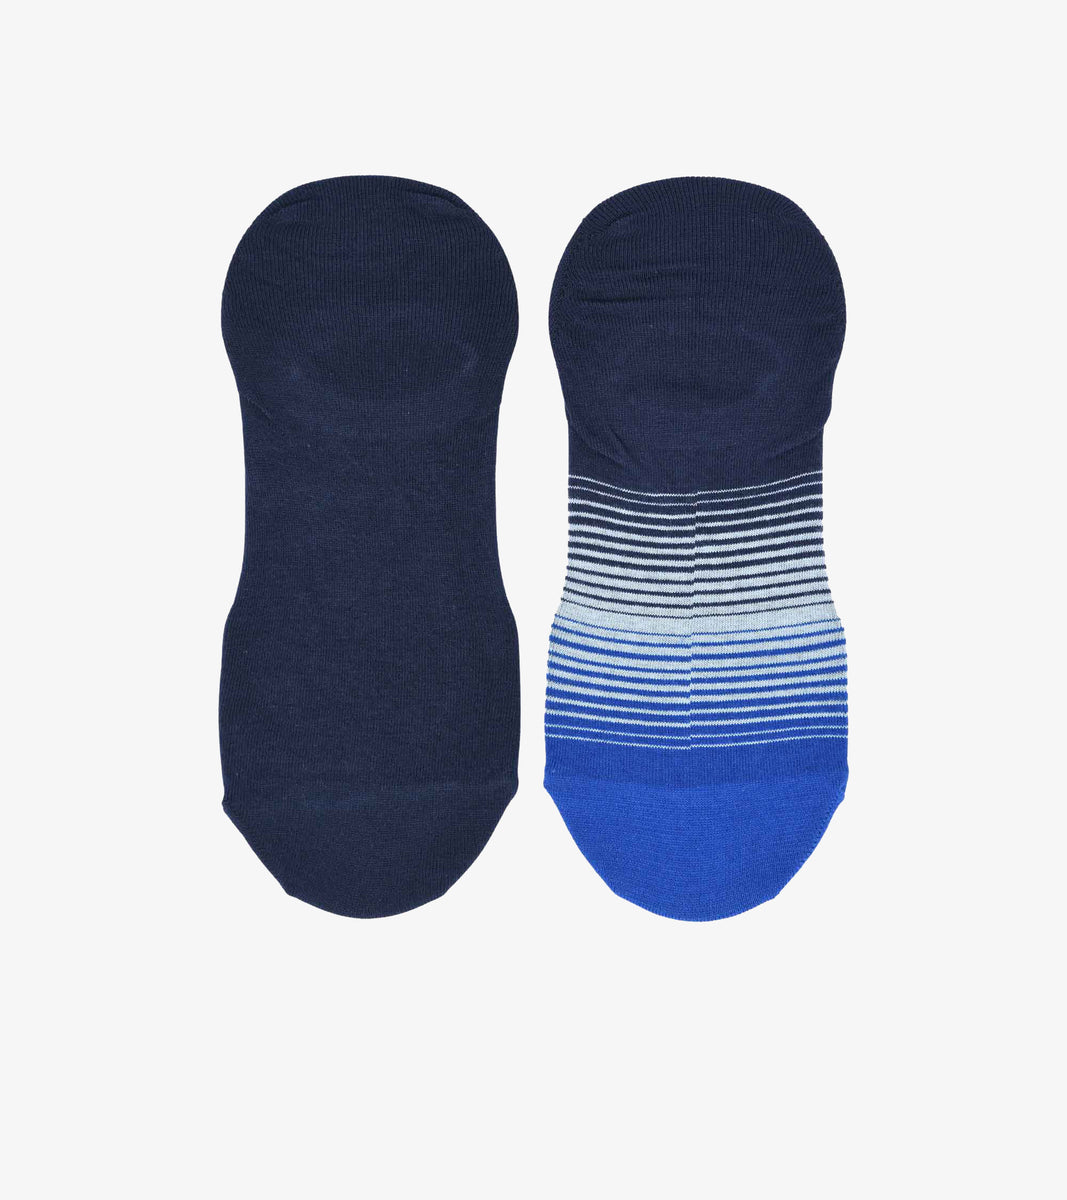 Men's Navy Blue Socks